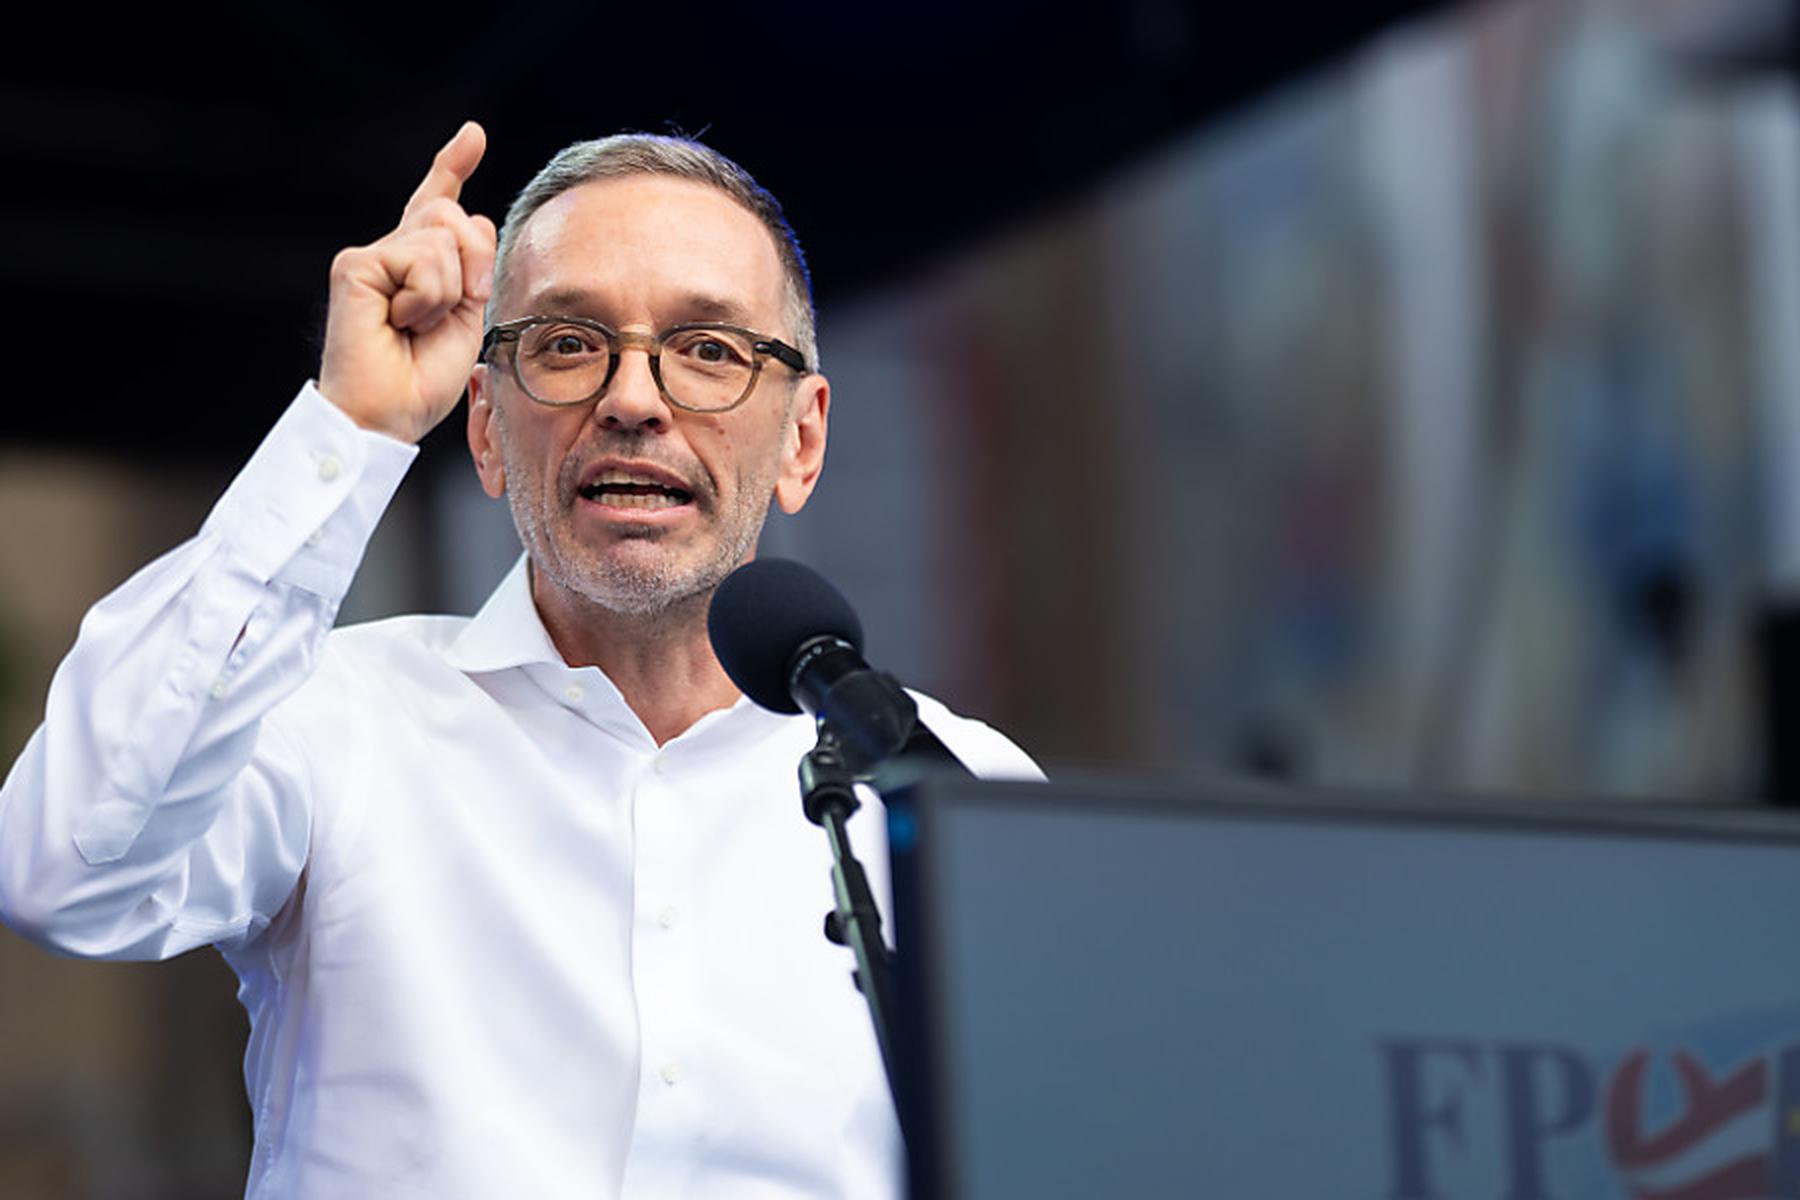 Wien: FPÖ bleibt im APA-Wahltrend voran, enges Rennen um Platz 2